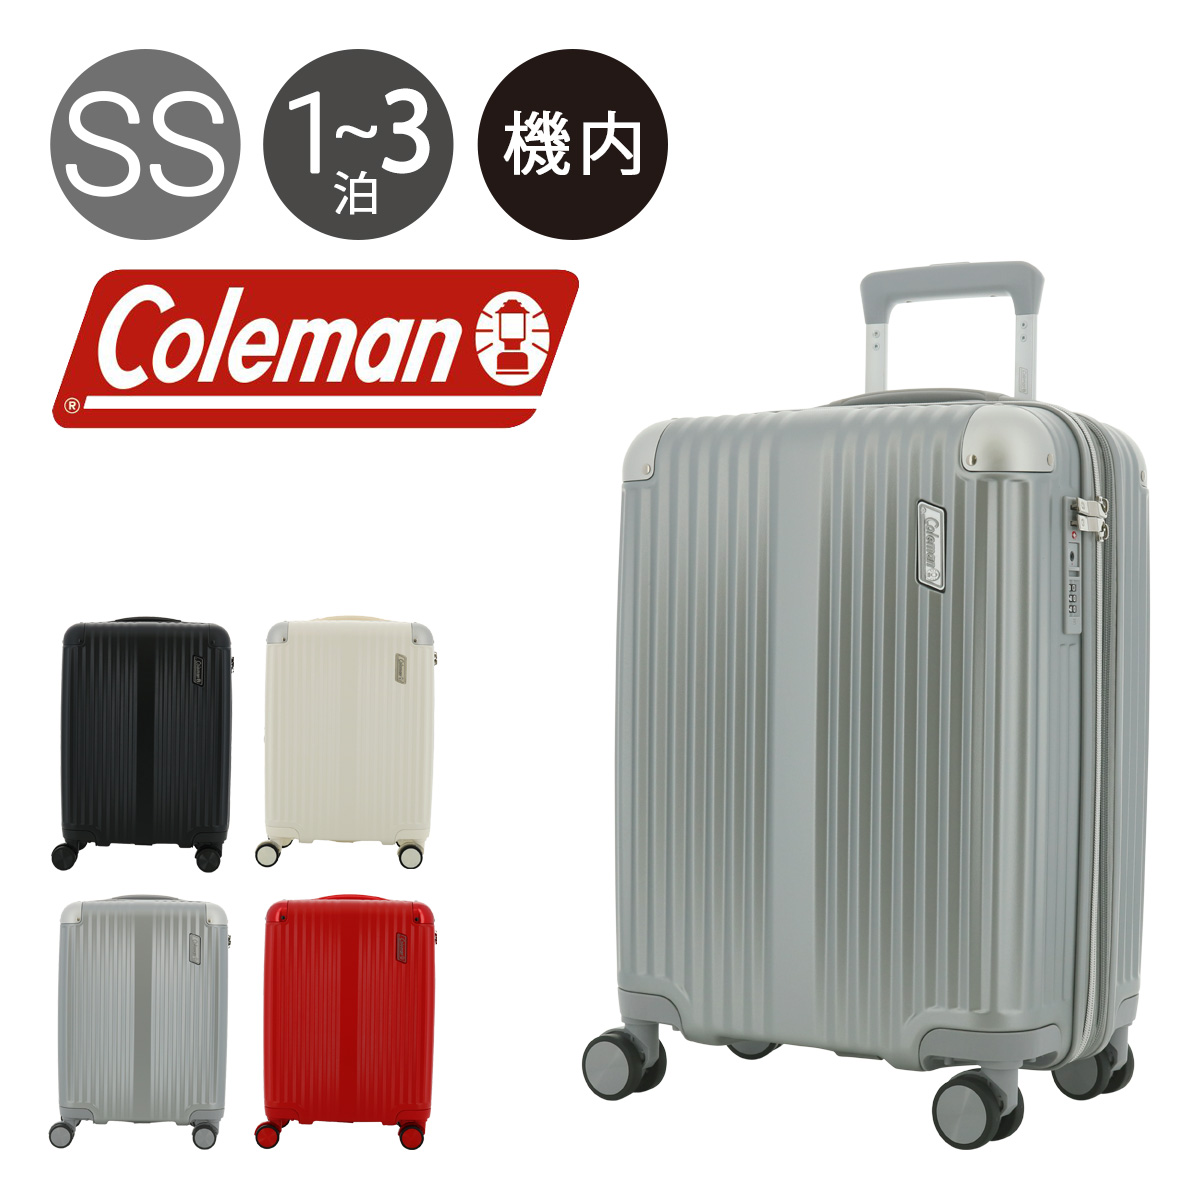 コールマン スーツケース 38〜46L 48cm 2.9kg ハード 14-69 Coleman 